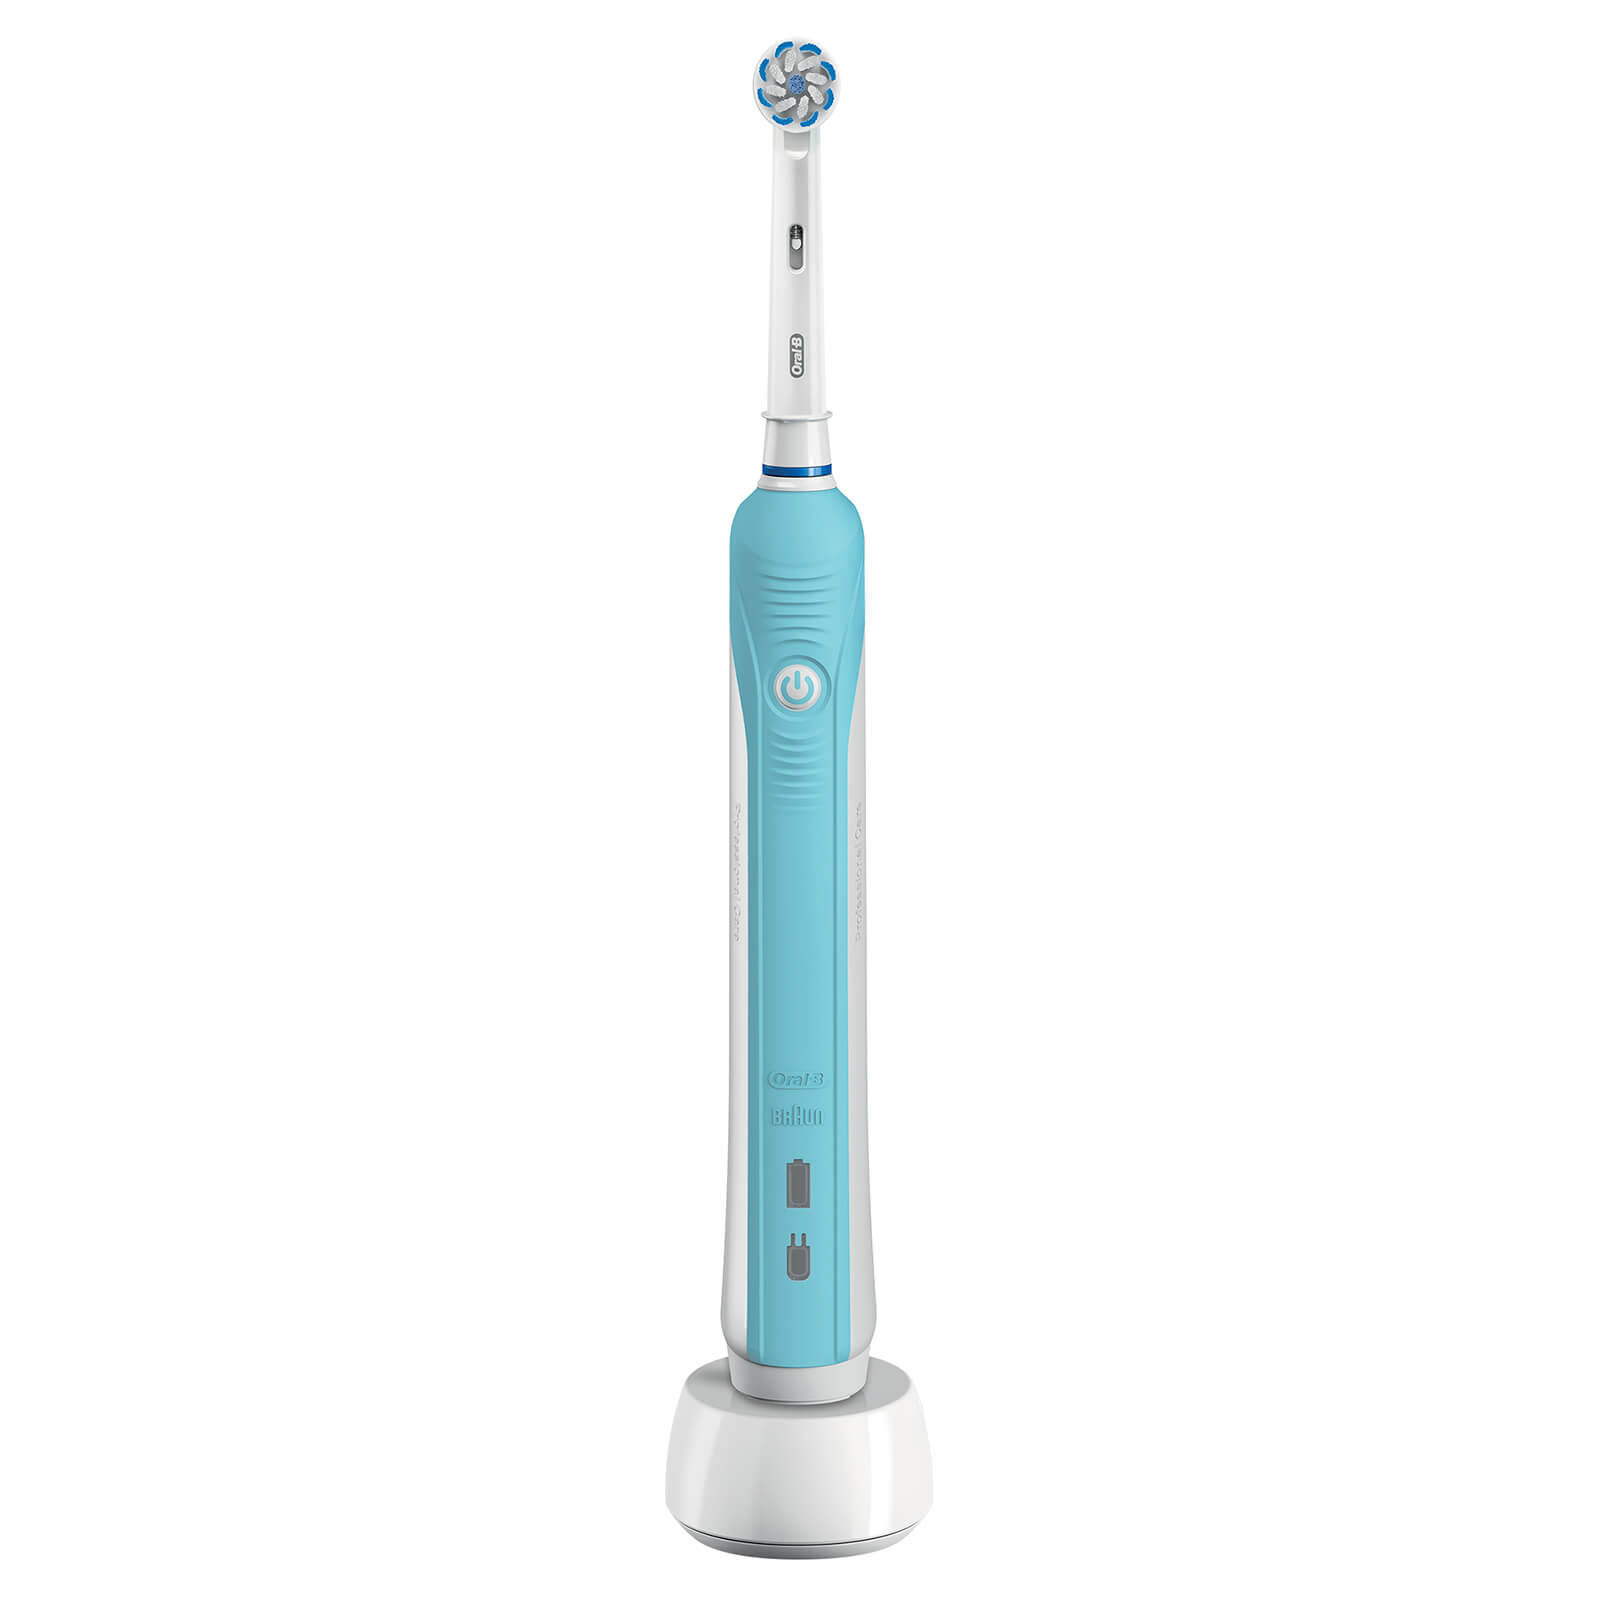 Oral-B Pro 600 Sensi Ultrathin Electric Toothbrush